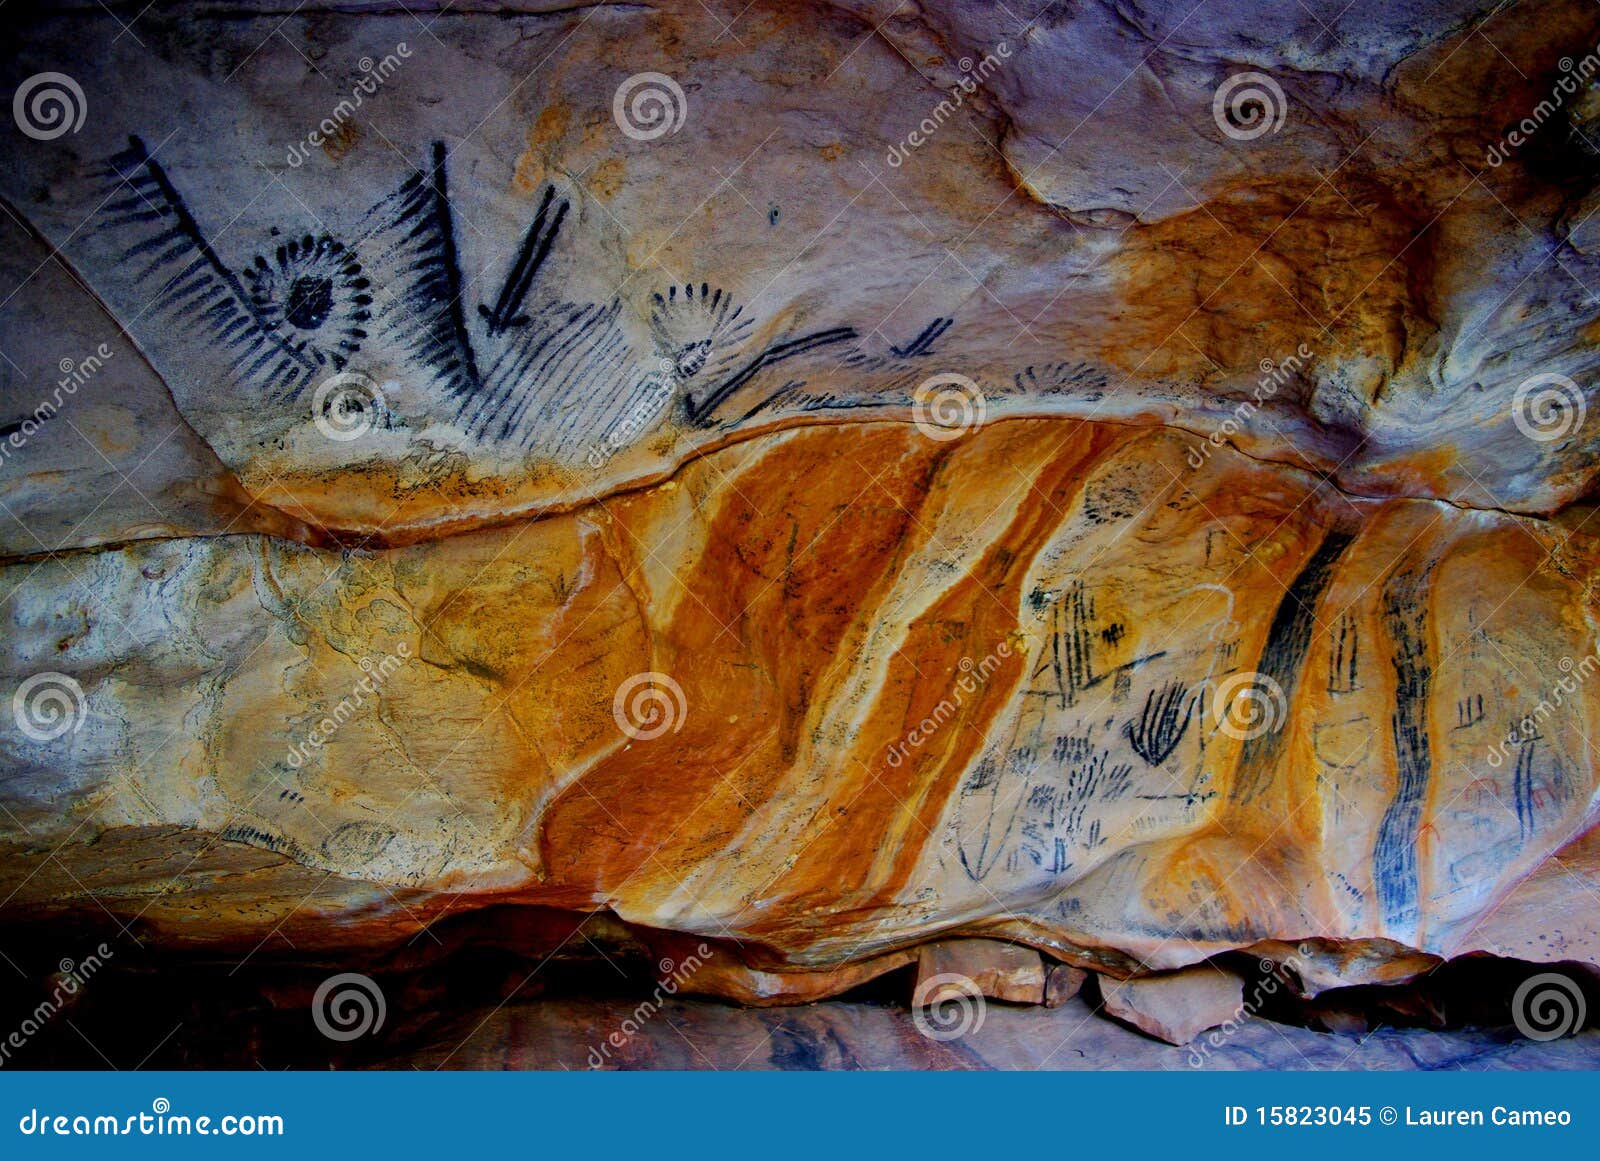 yorumbulla caves, flinders ranges